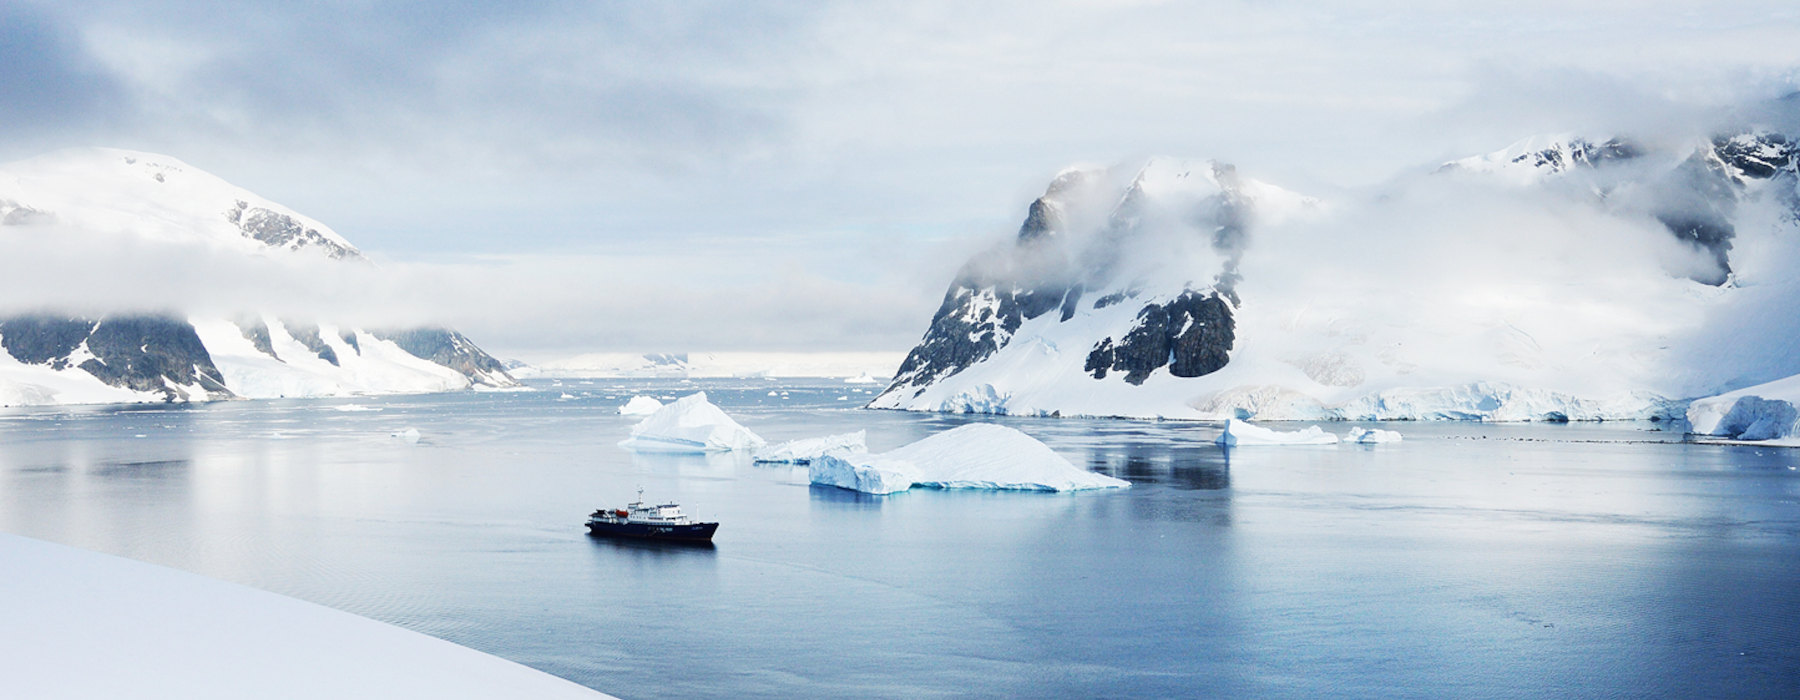 All our Antarctica<br class="hidden-md hidden-lg" /> Luxury Adventure Holidays